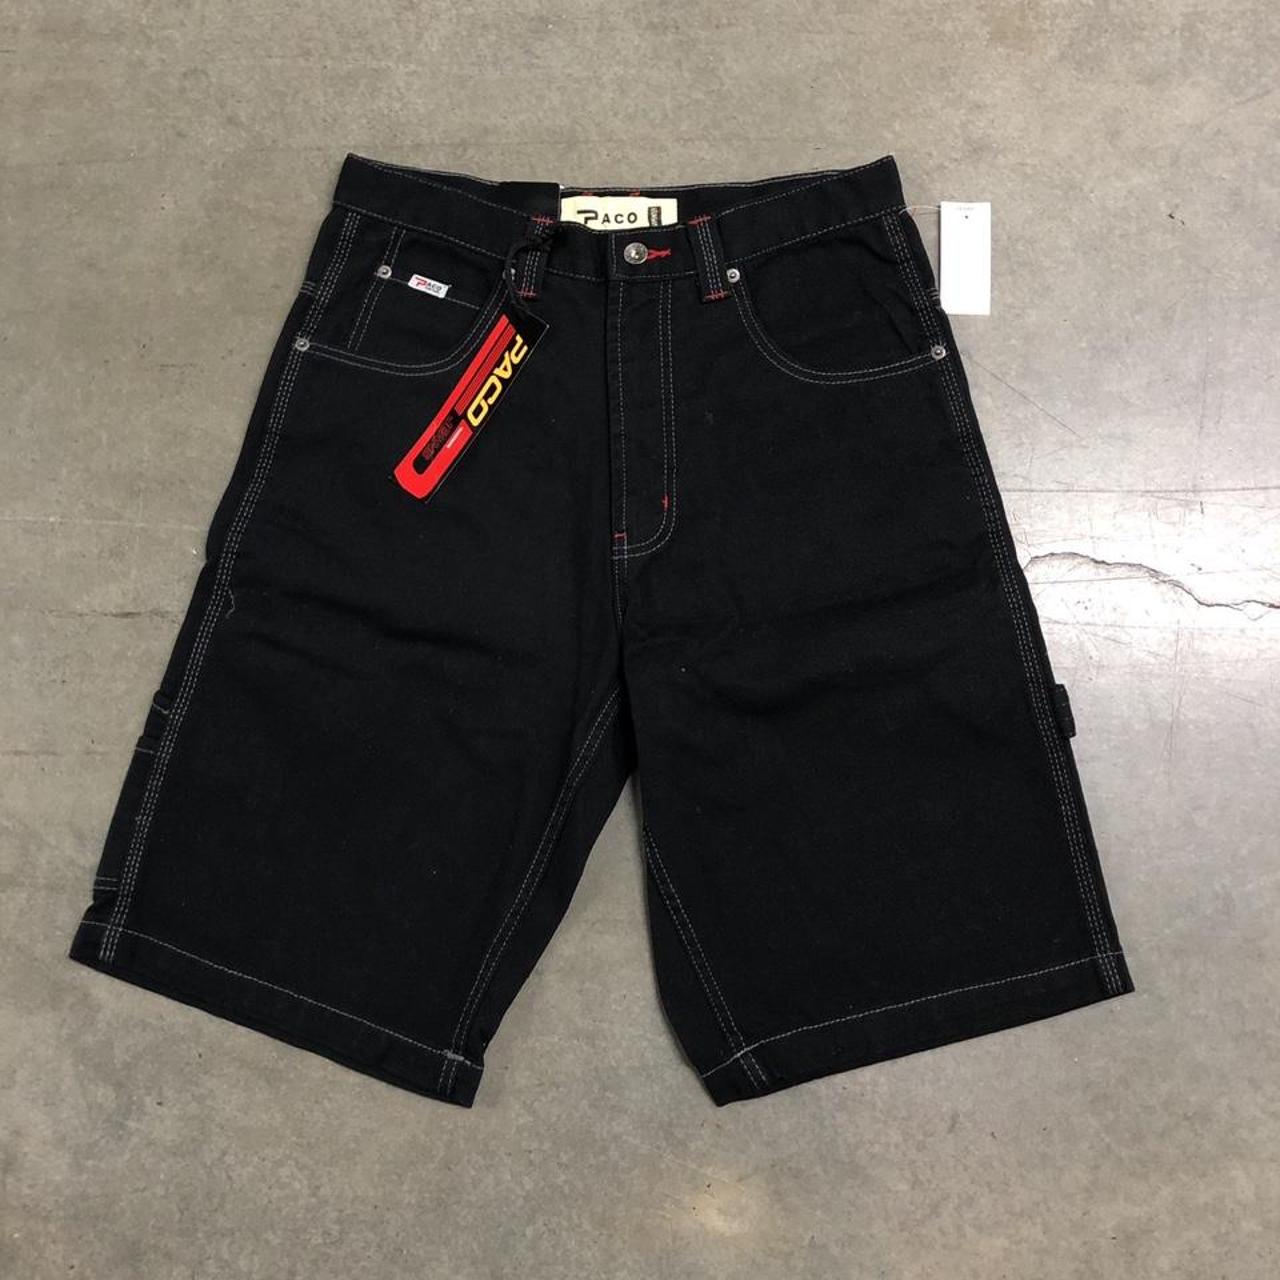 Vintage Paco Jeans Carpenter Black Denim Shorts... - Depop